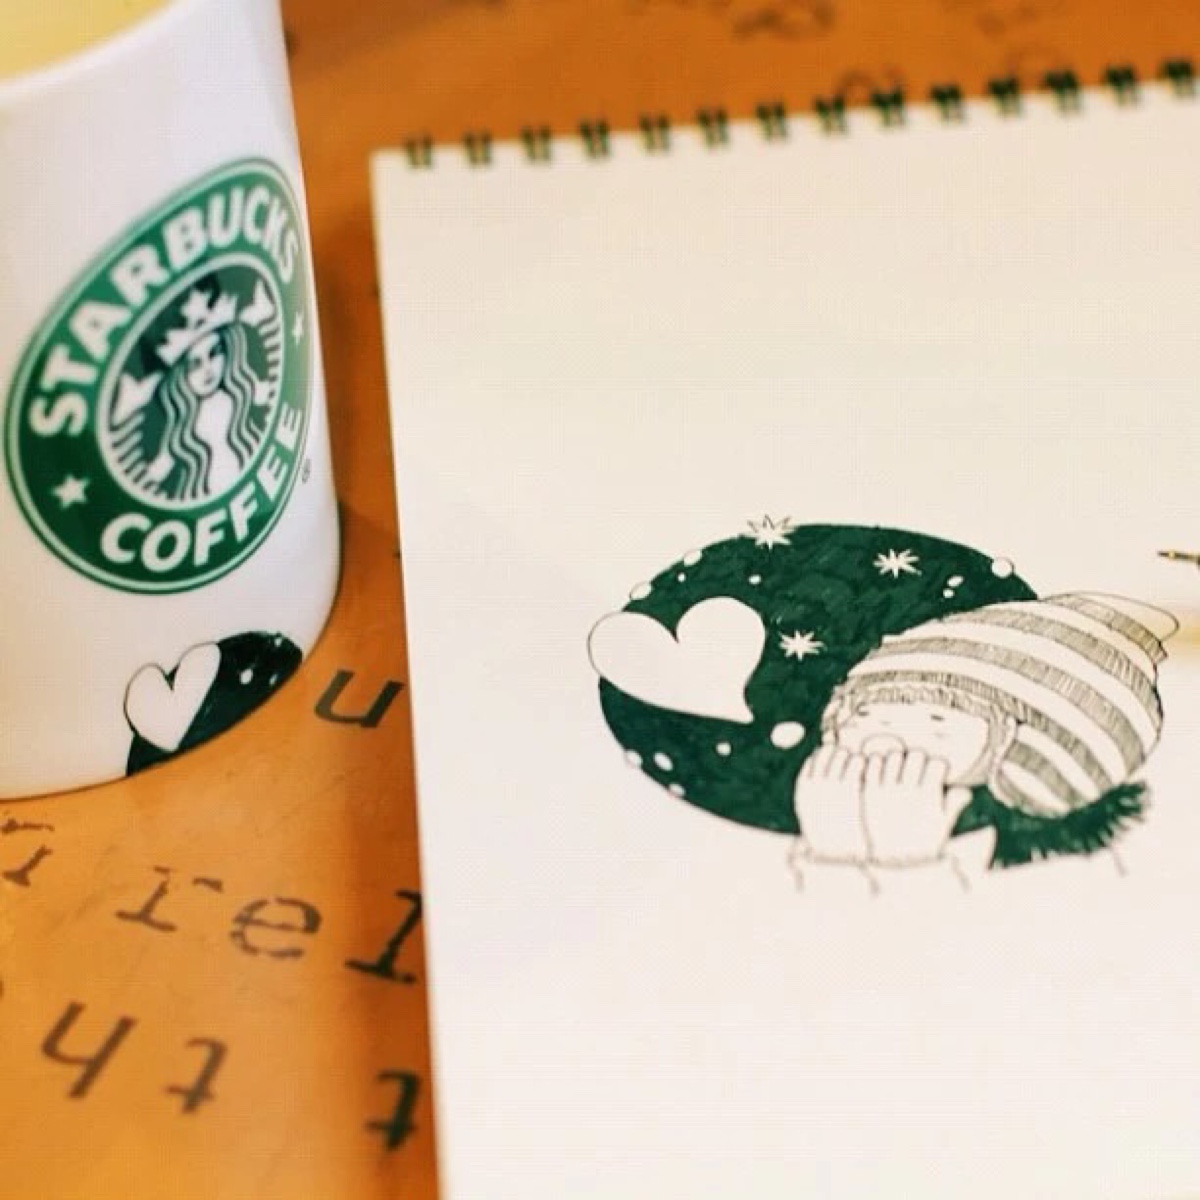 日本漫画家tomoko shintani在喝咖啡时画下的小清新插画,没有太多色彩